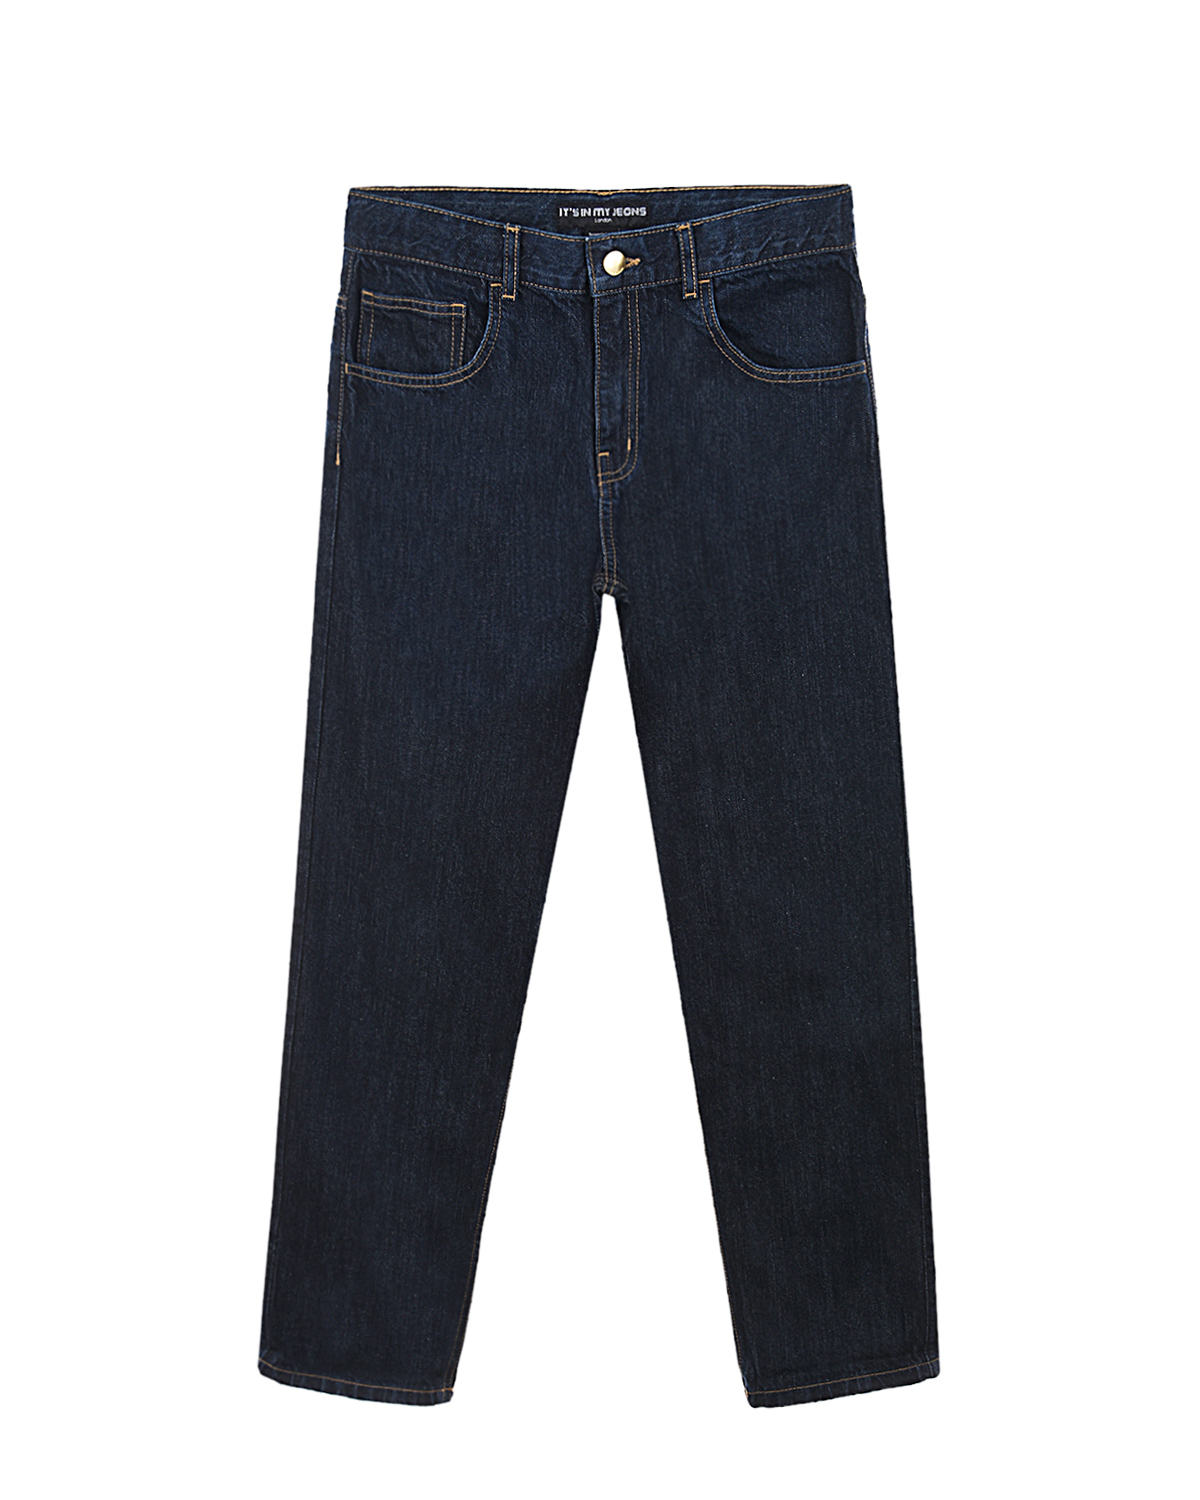 Однотонные джинсы с контрастной строчкой Its in my jeans детские, размер 140, цвет синий - фото 1